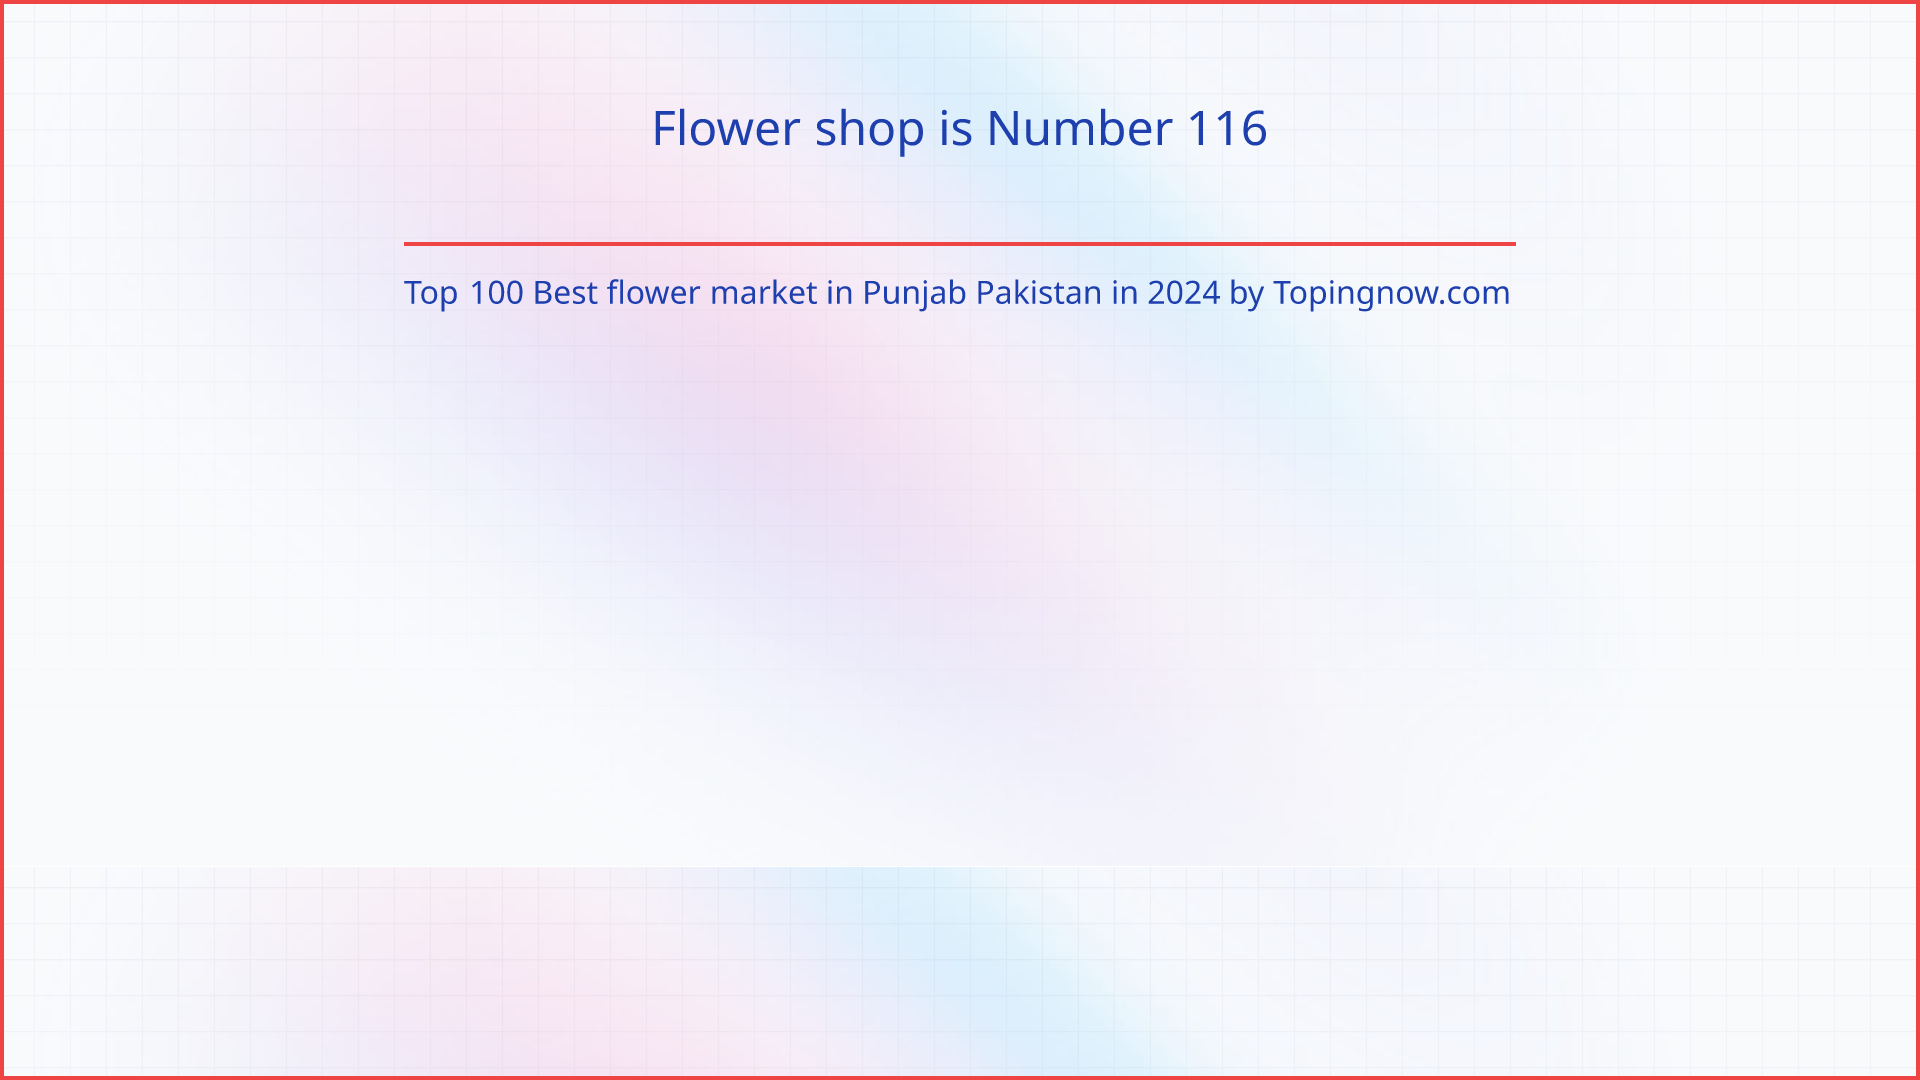 Flower shop: Top 100 Best flower market in Punjab Pakistan in 2024